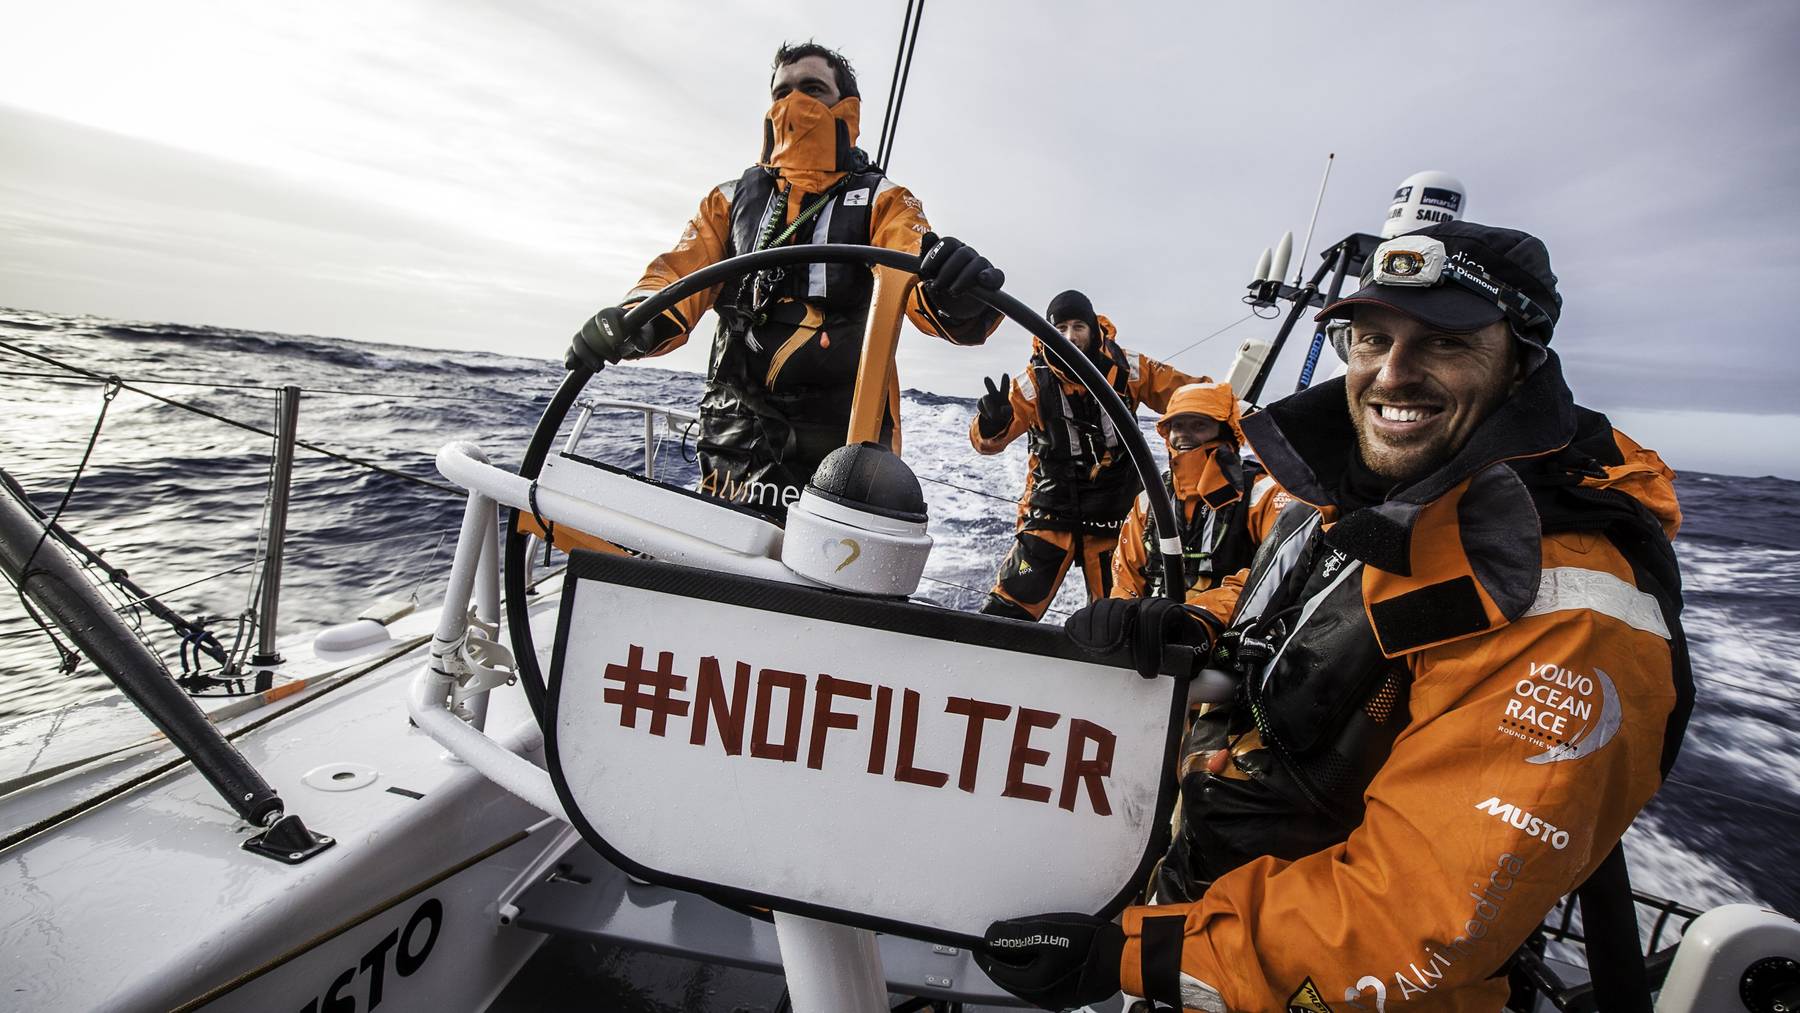 Dave Swete vom Team Alvimedica zeigt bei einem Boot-Rennen ein Schild mit dem Hashtag #Nofilter.